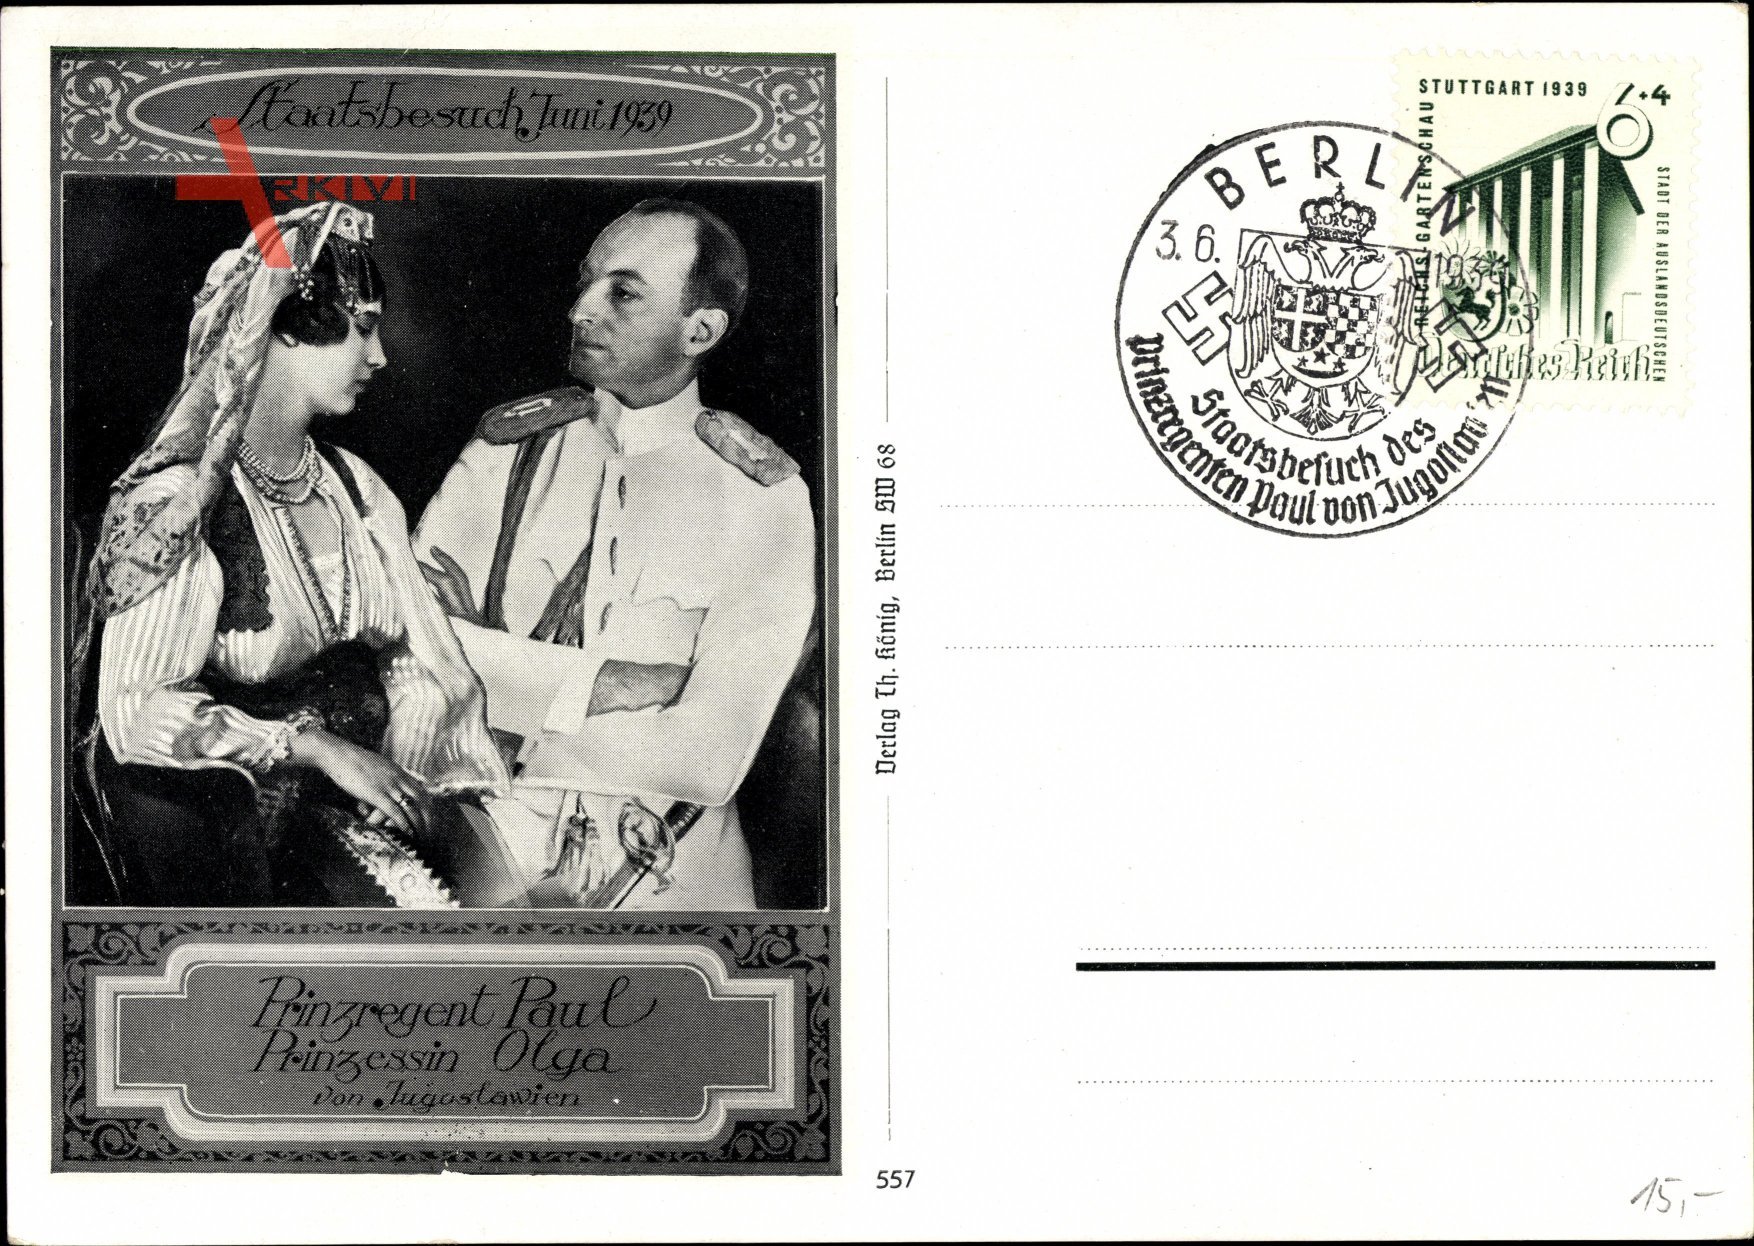 Prinzregent Paul und Prinzessin Olga von Jugoslawien, Staatsbesuch 1939